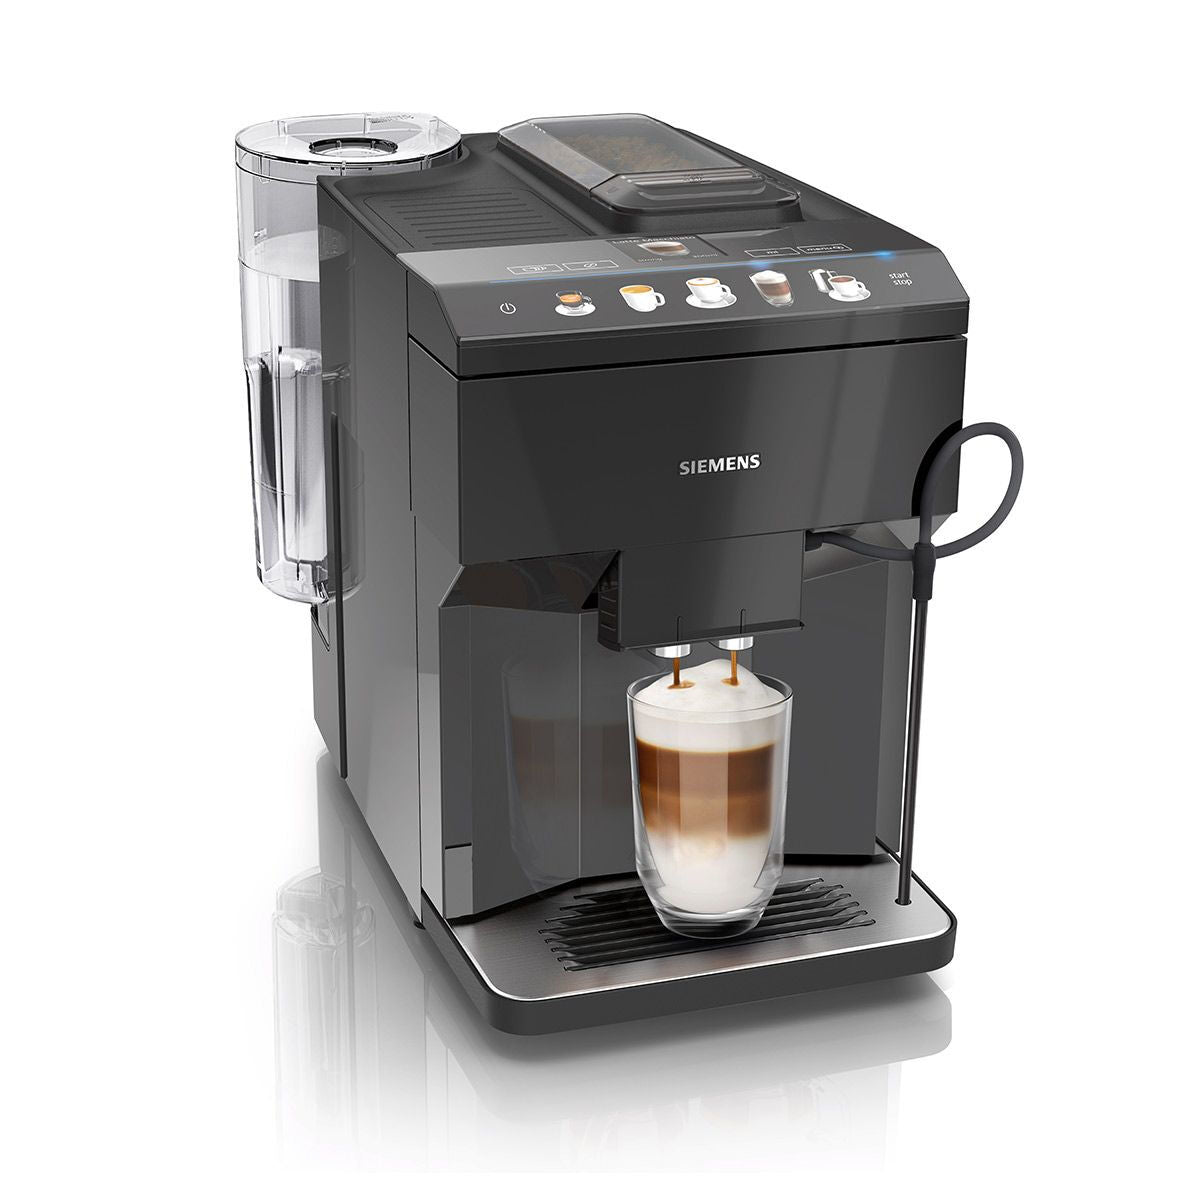 Superautomatische Kaffeemaschine Siemens AG TP501R09 Schwarz noir 1500 W 15 bar 1,7 L - CA International 